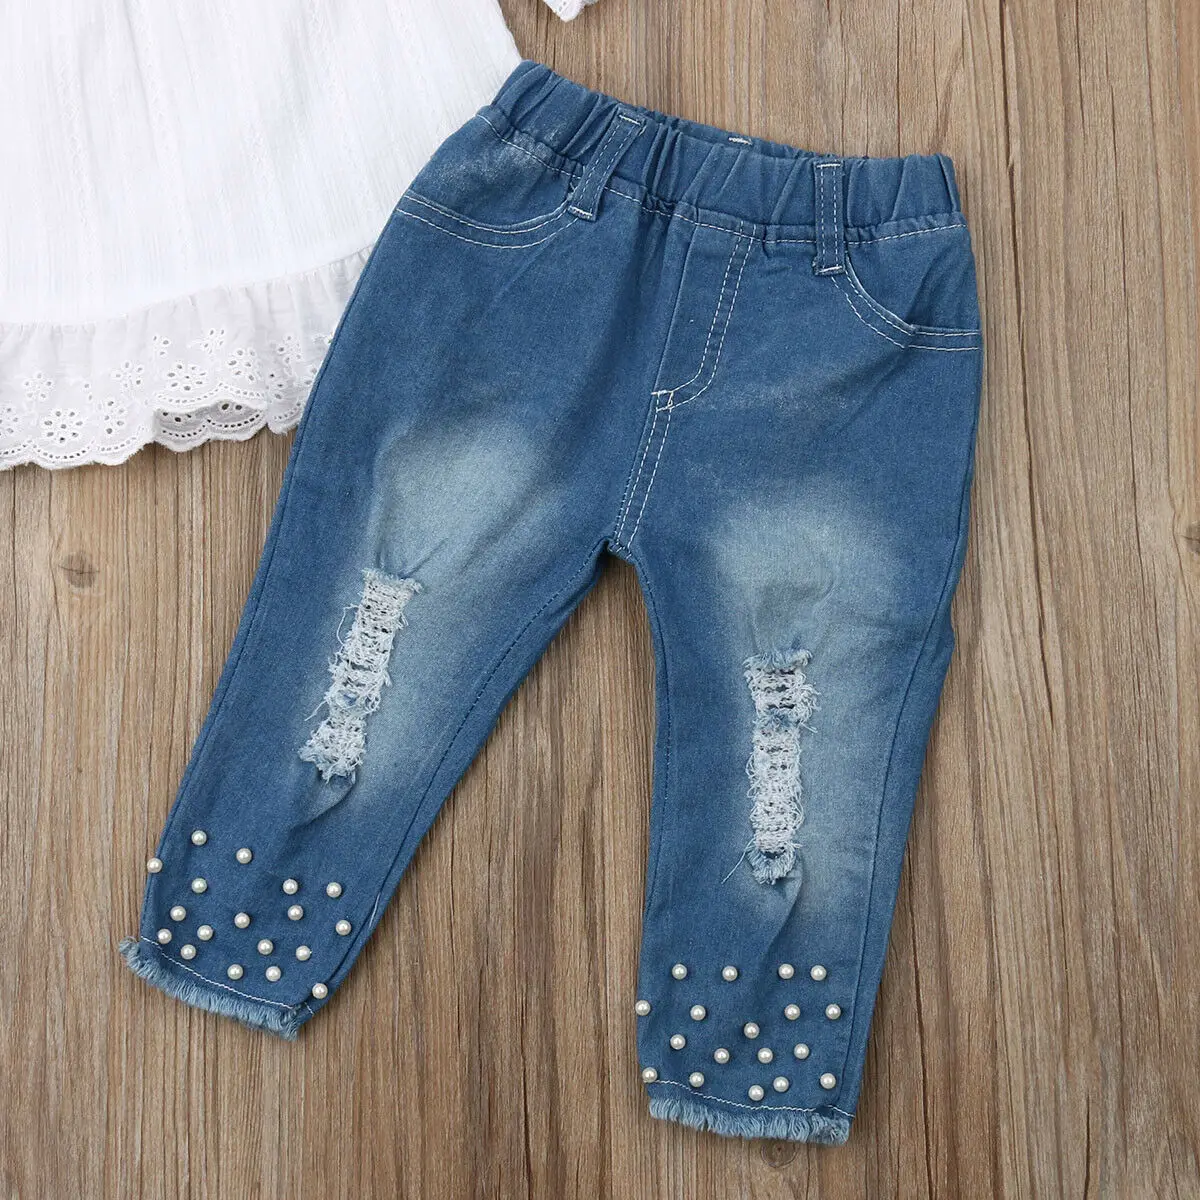 Puidcoco/ г. летние топы для маленьких девочек, белая футболка джинсовые длинные штаны, джинсовая одежда Модный комплект